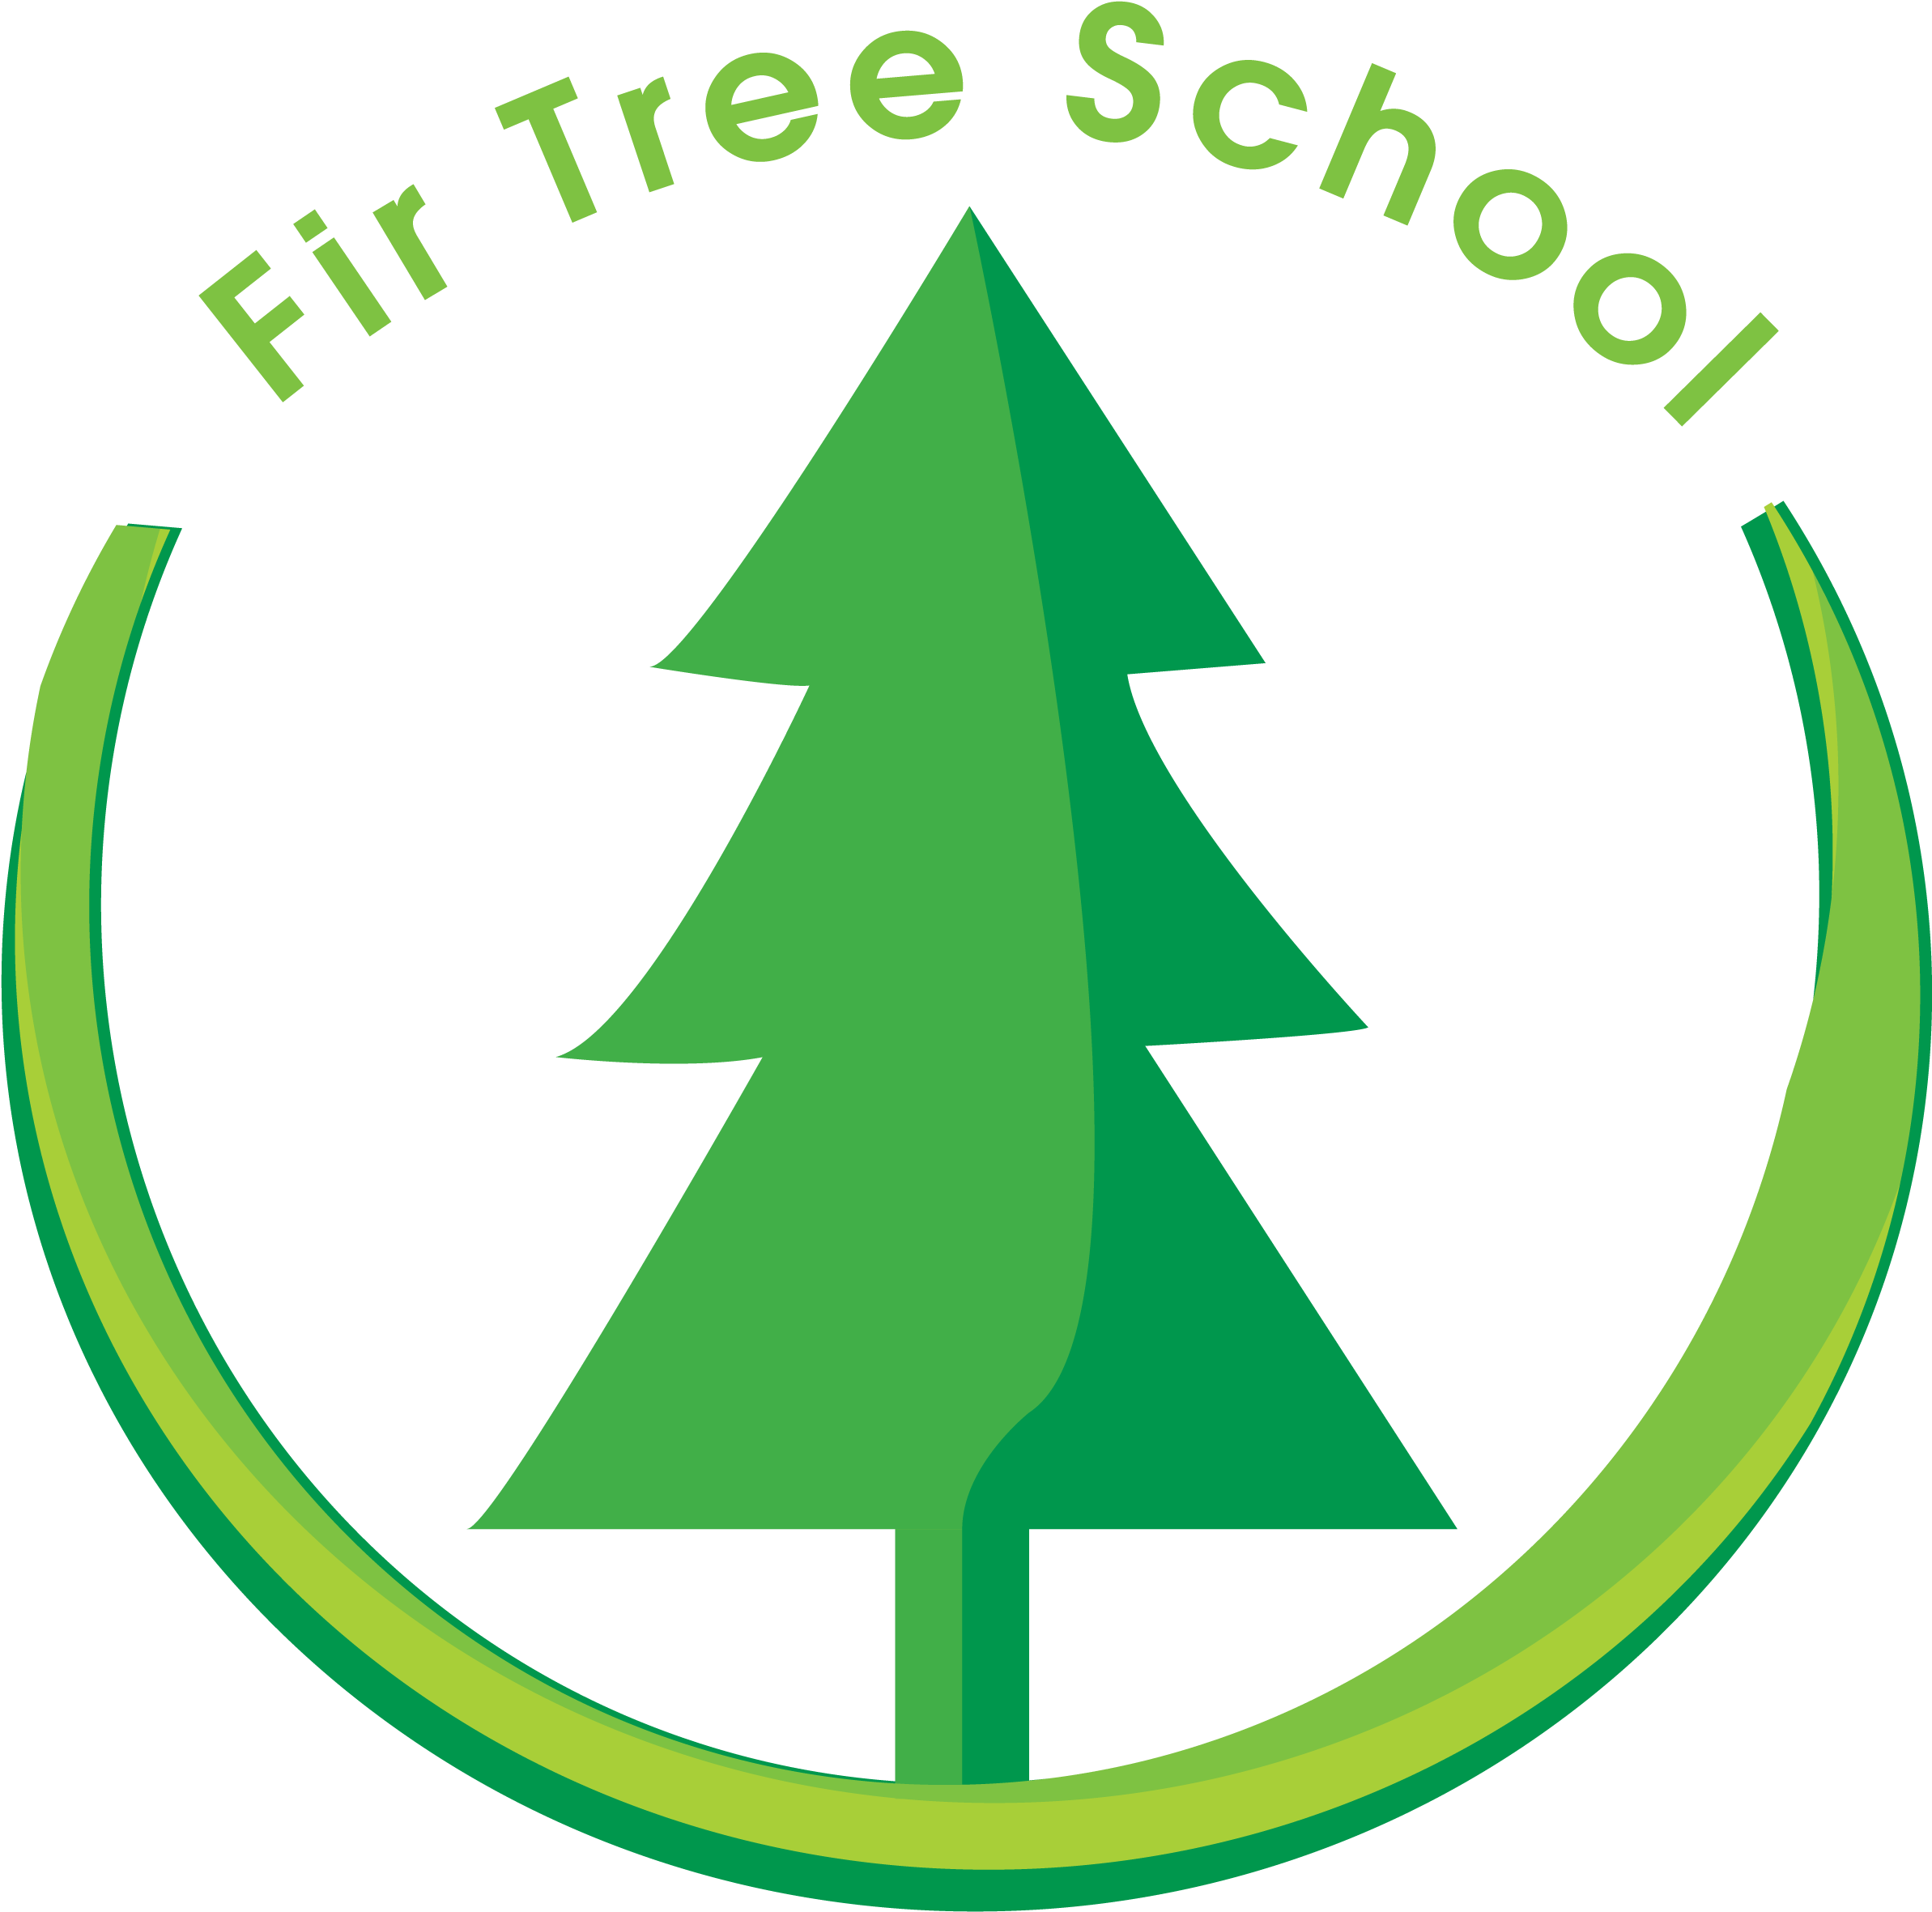 Fir Tree School - Fir Tree (2493x2493)